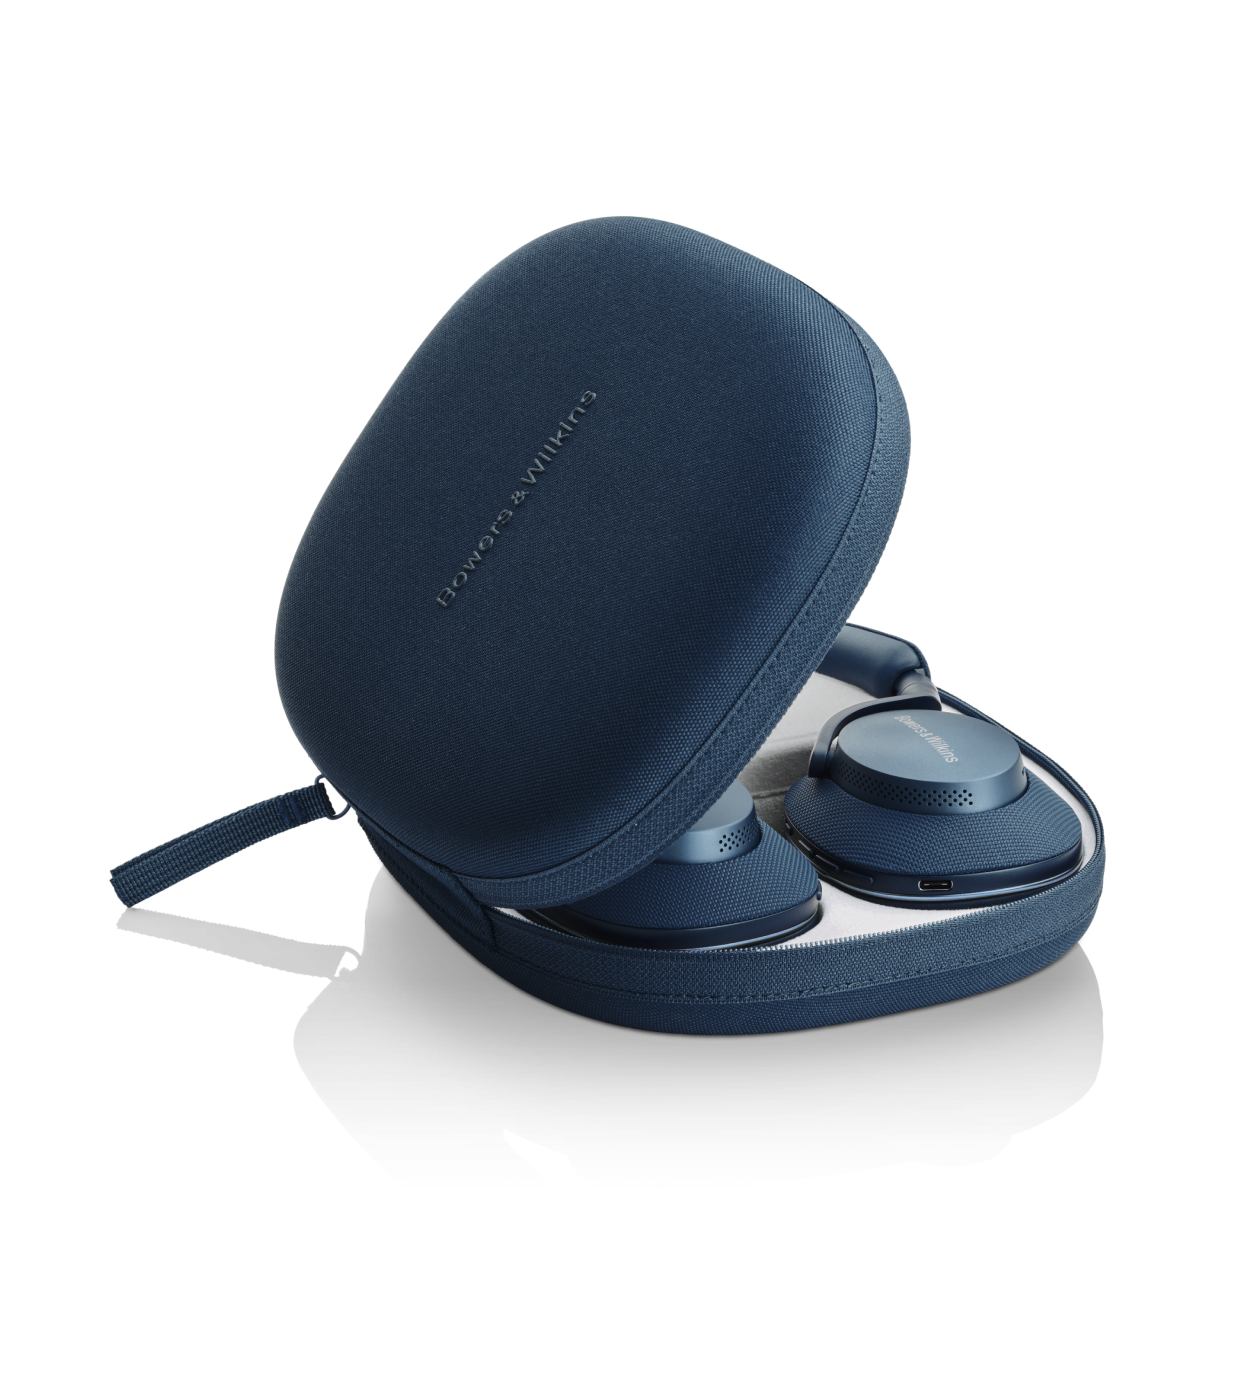 אוזניות Bluetooth אלחוטיות דגם Px7 S2e מבית Bowers & Wilkins צבע כחול